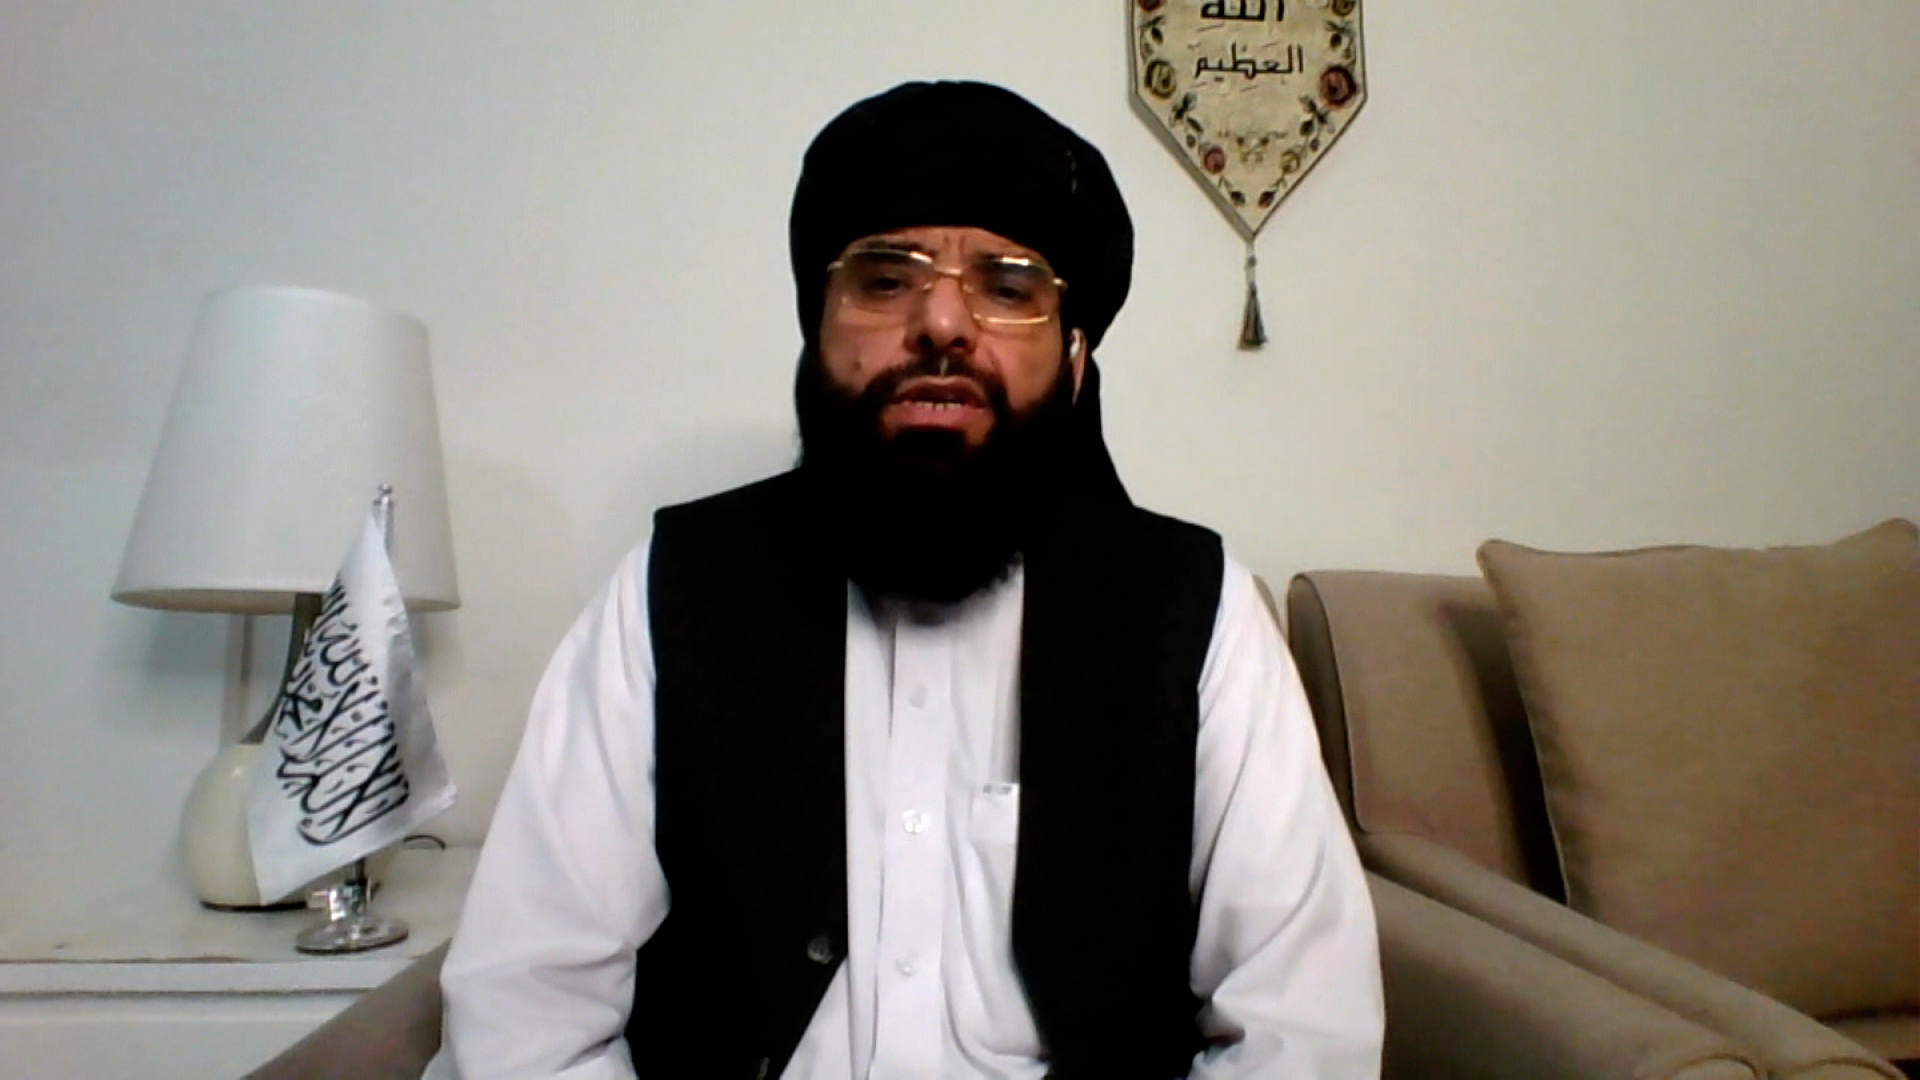 Taliban spokesman Suhail Shaheen